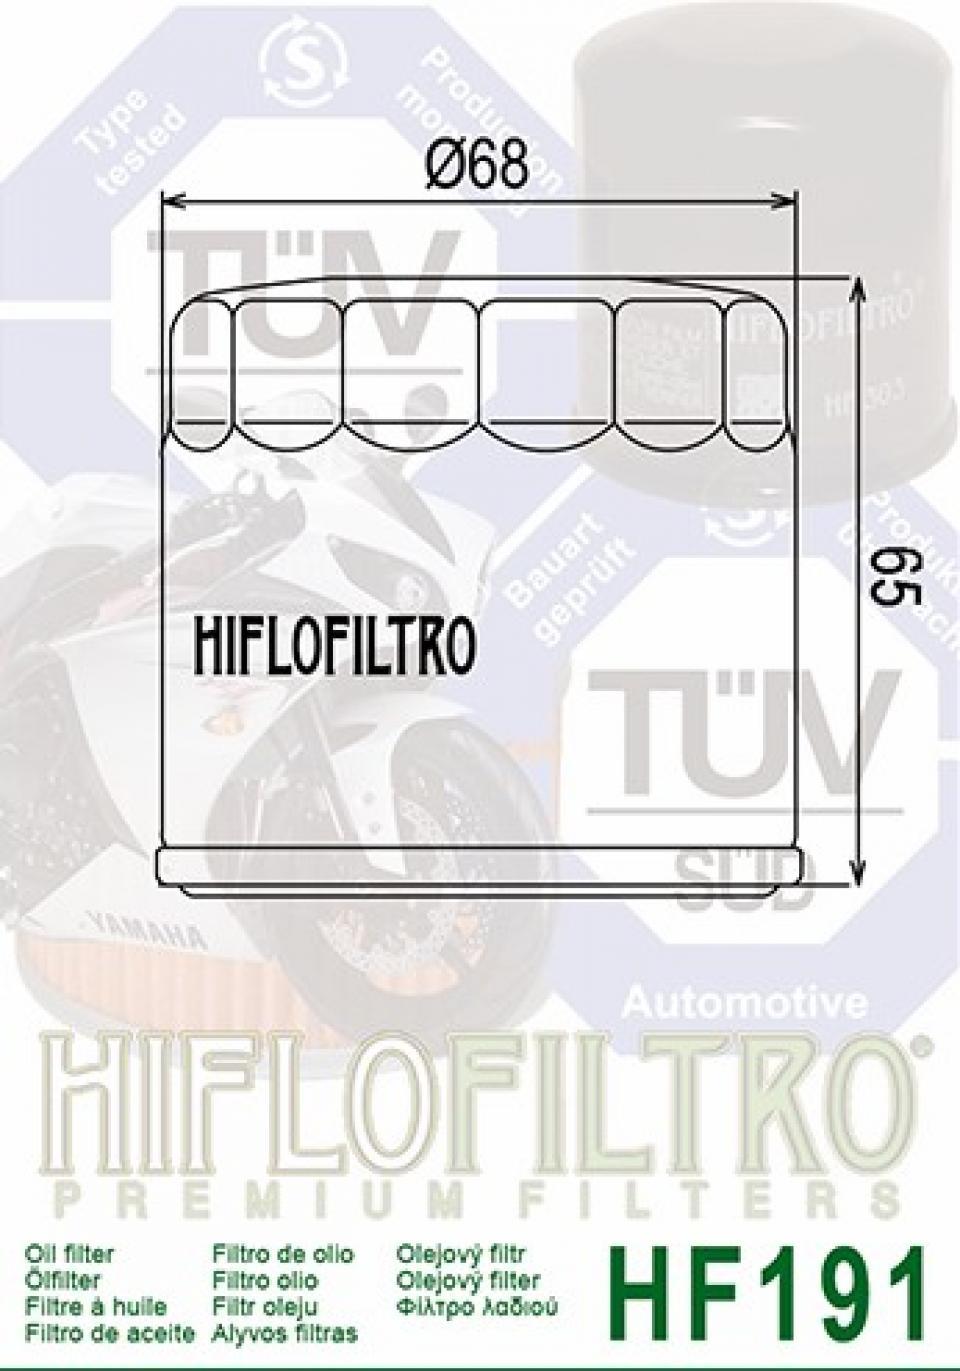 Filtre à huile Hiflofiltro pour Moto Triumph 600 TT 2000 à 2005 HF191 Neuf